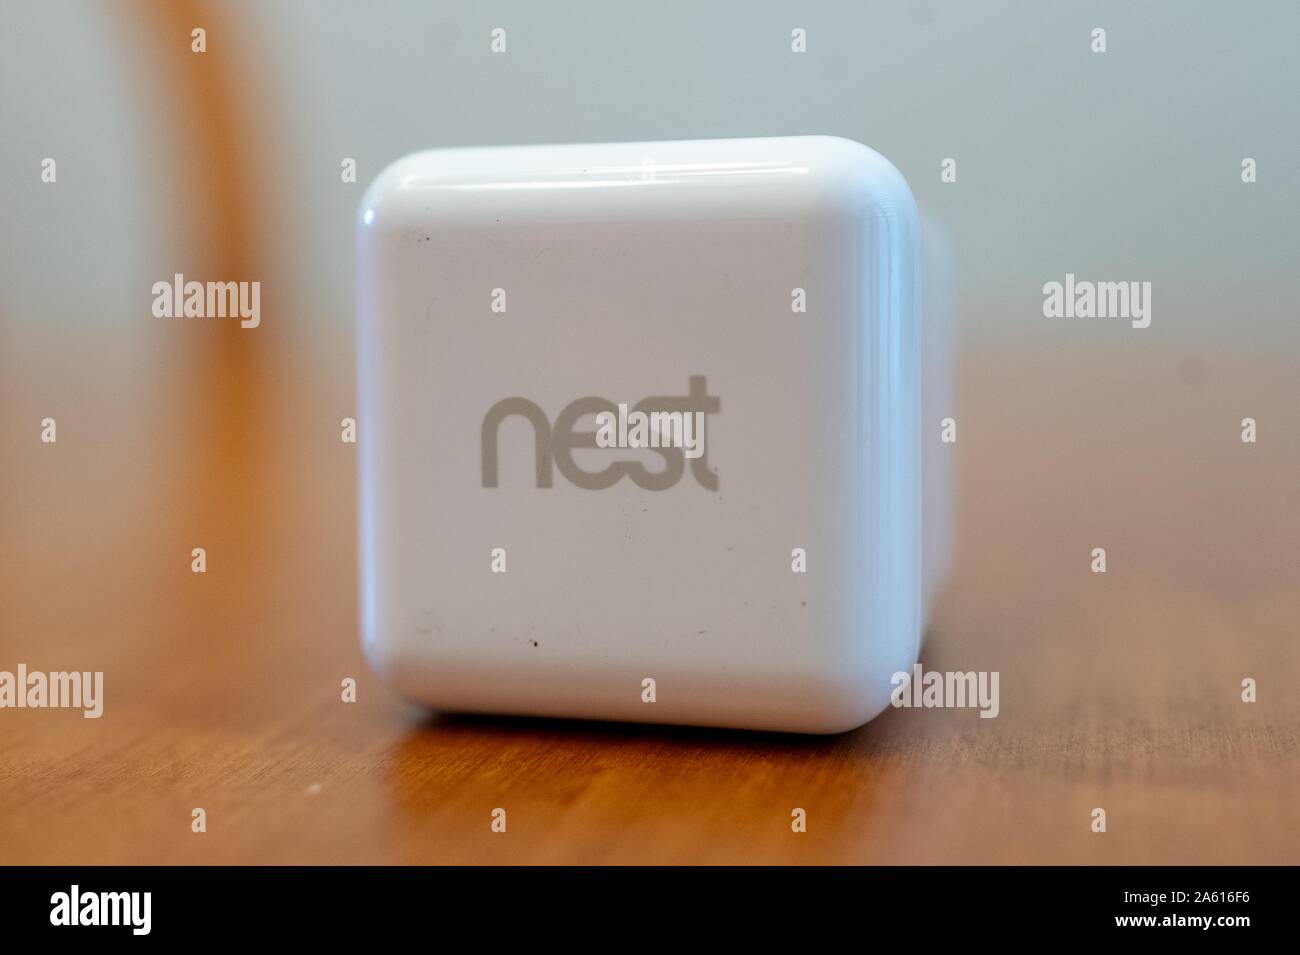 Nahaufnahme des Logos für die "Nest Line of Home Security Products" von Google Inc. Auf einem weißen Netzteil auf einer hellen Holzoberfläche in einem eleganten Haus in San Ramon, Kalifornien, 27. August 2019. () Stockfoto